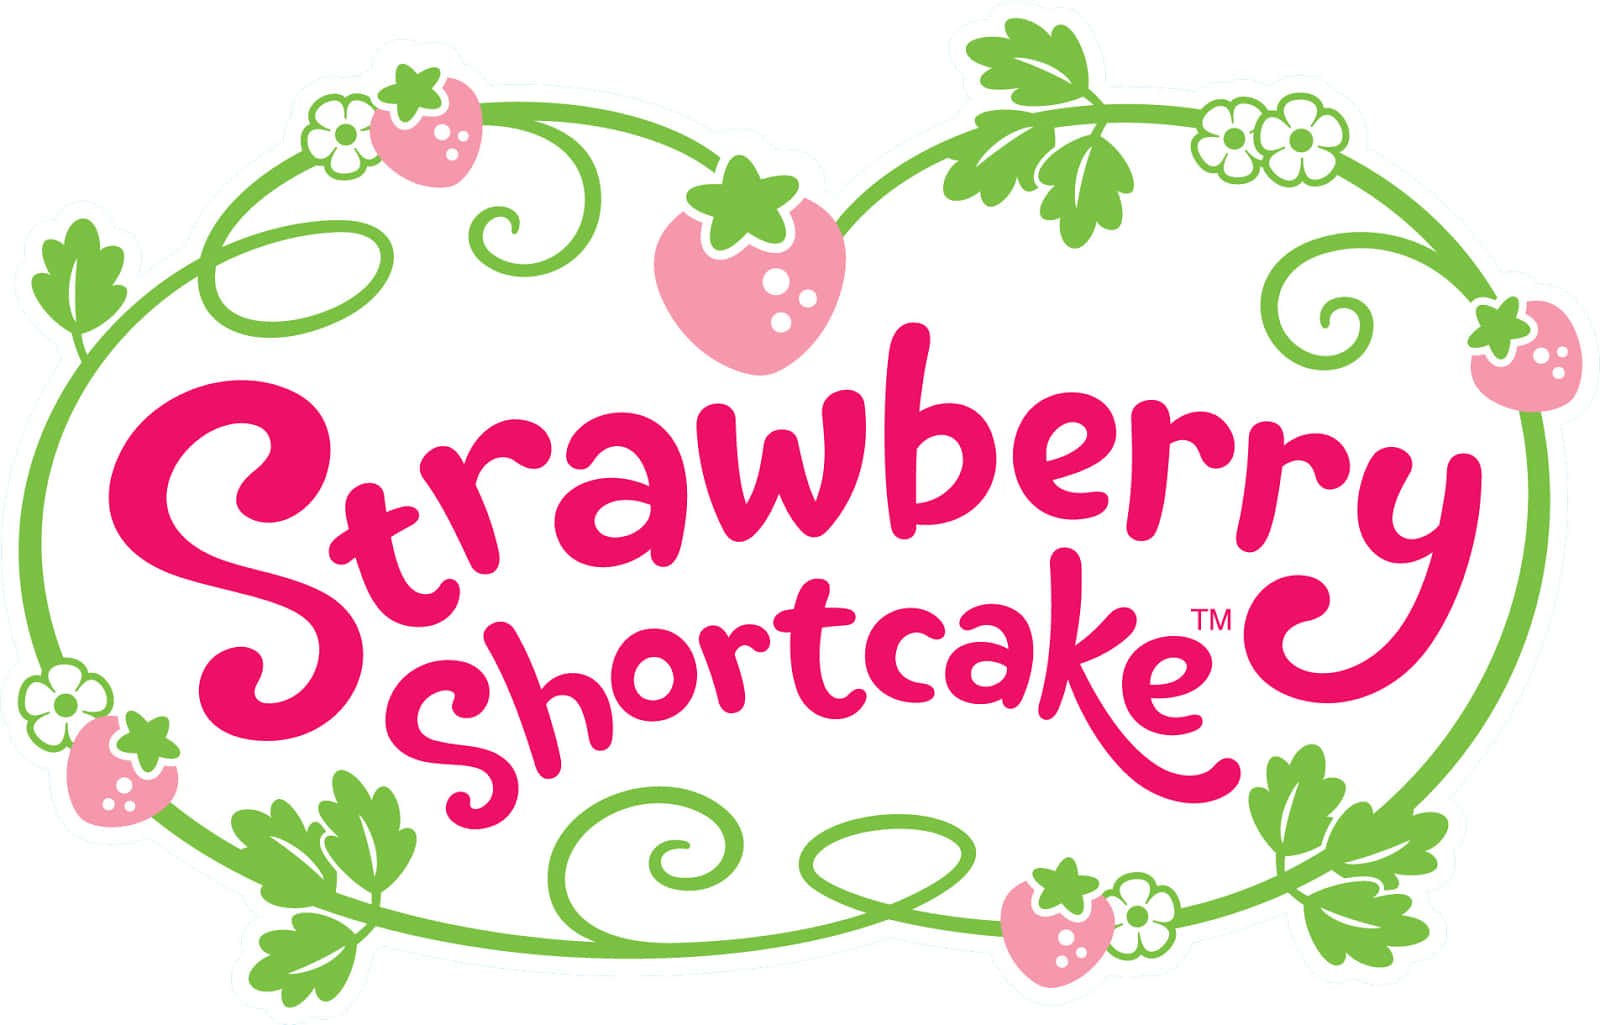 Logode Strawberry Shortcake En Verde Y Rosa. Fondo de pantalla